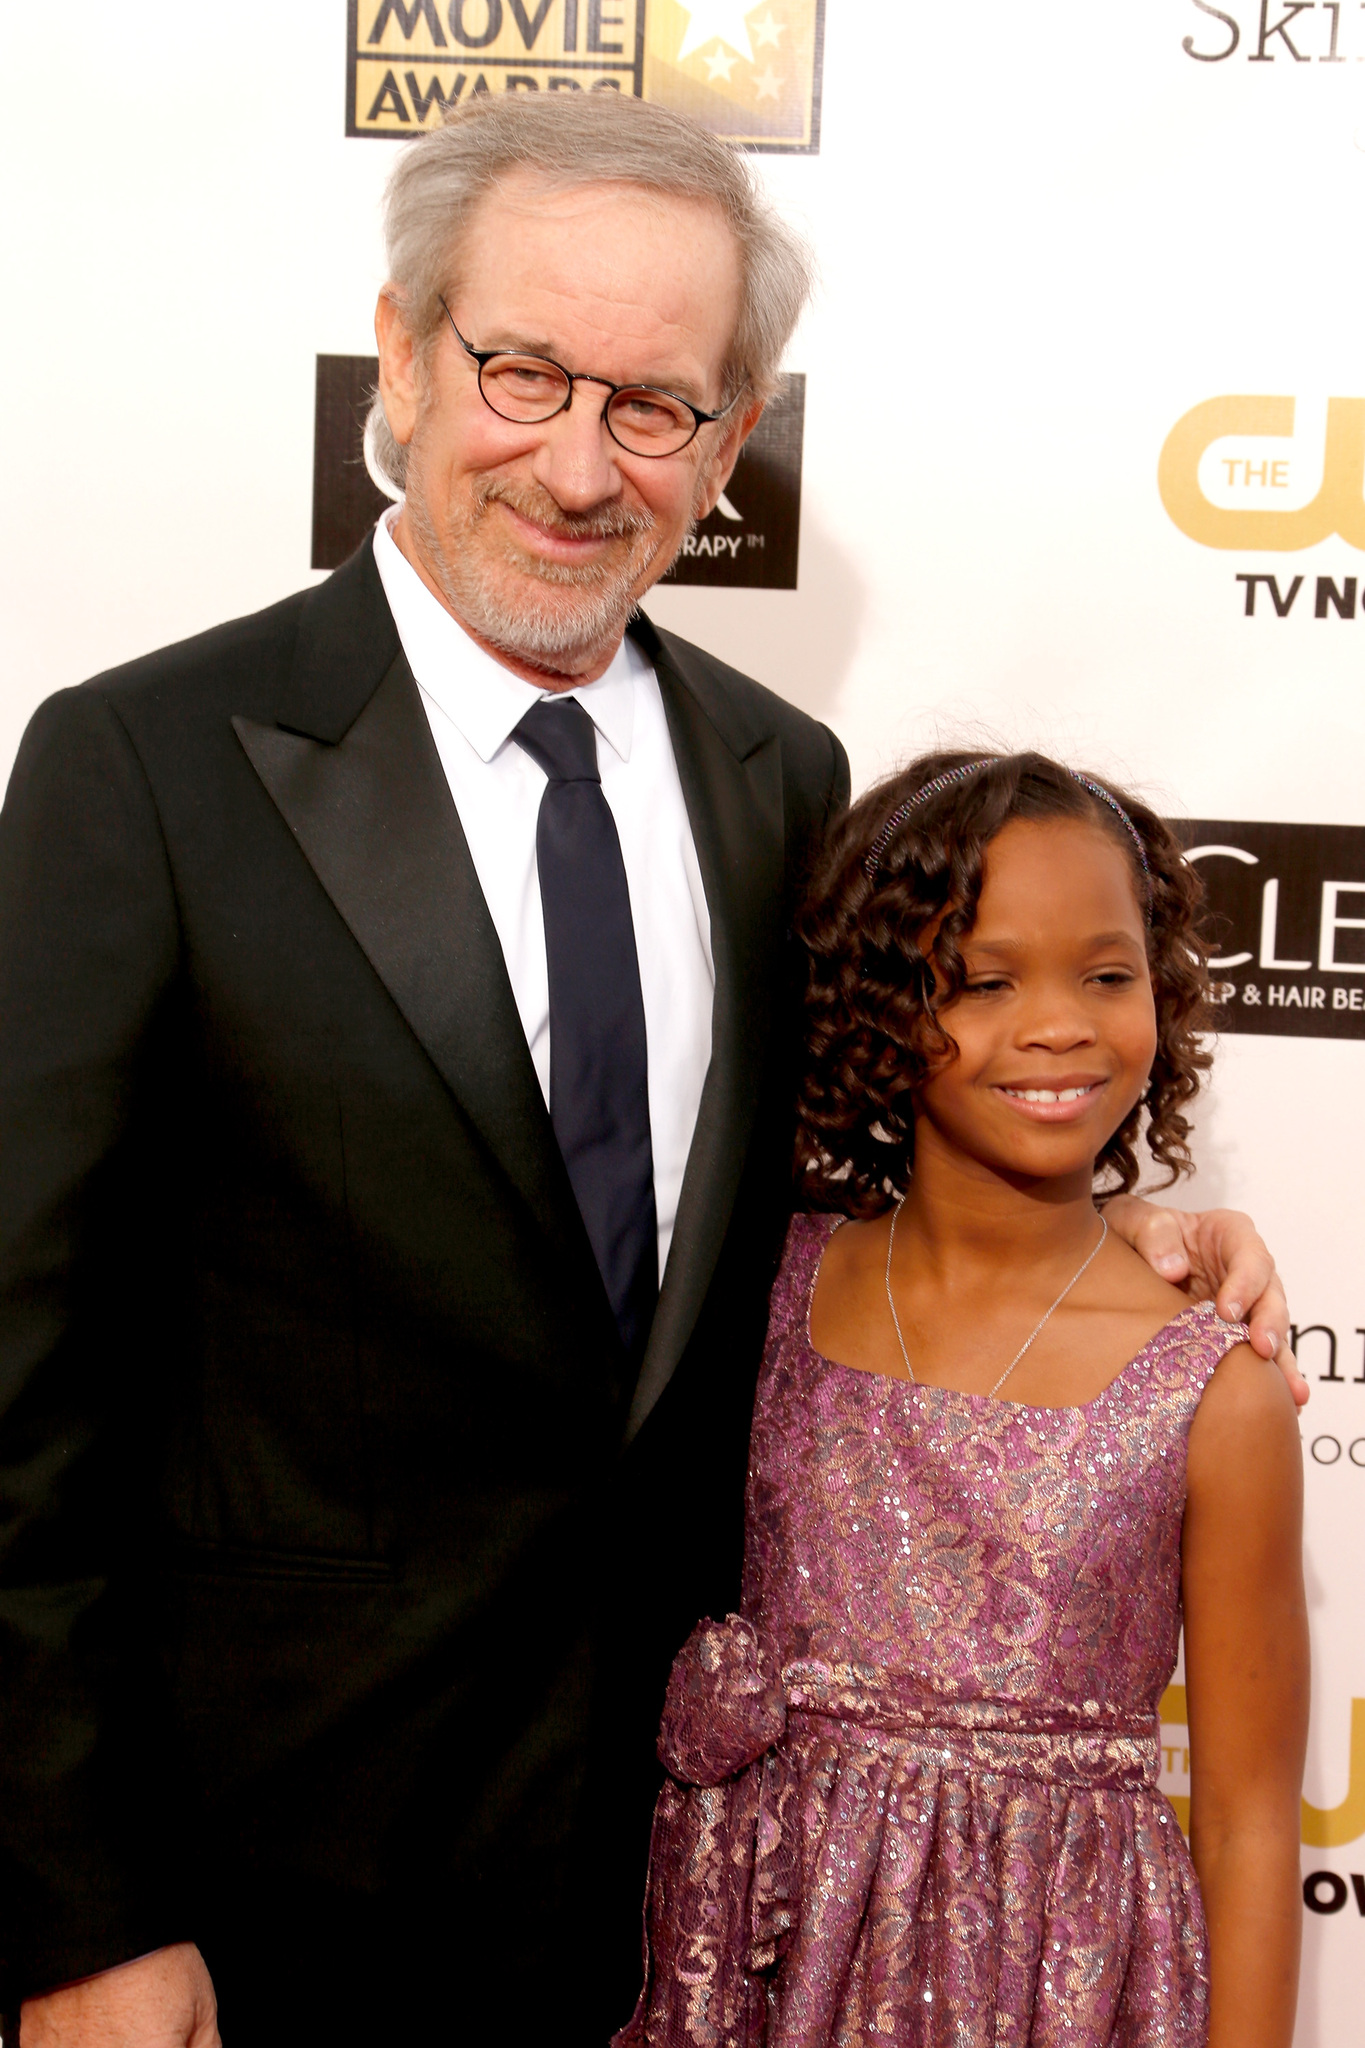 Steven Spielberg and Quvenzhané Wallis